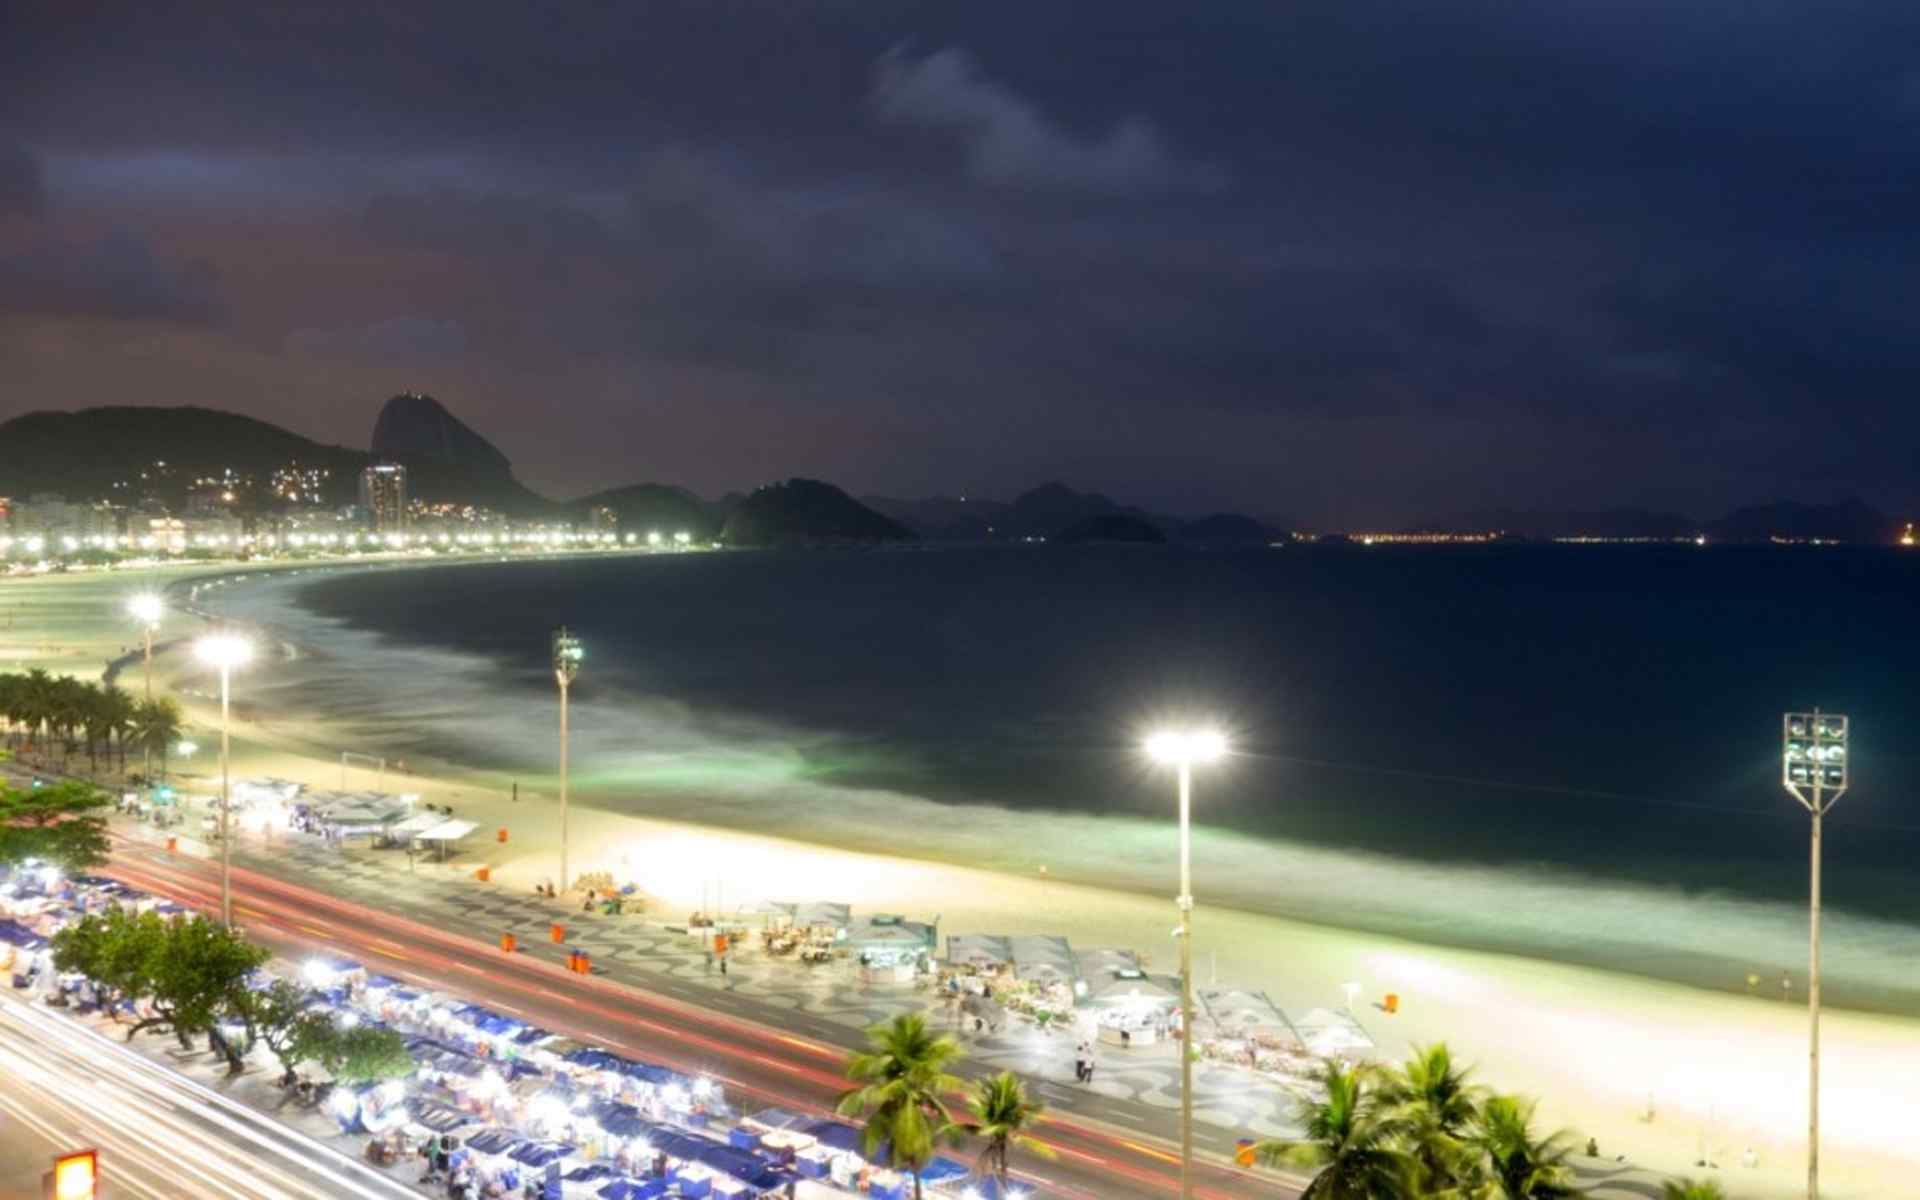 奥运城市里约热内卢唯美风景桌面壁纸